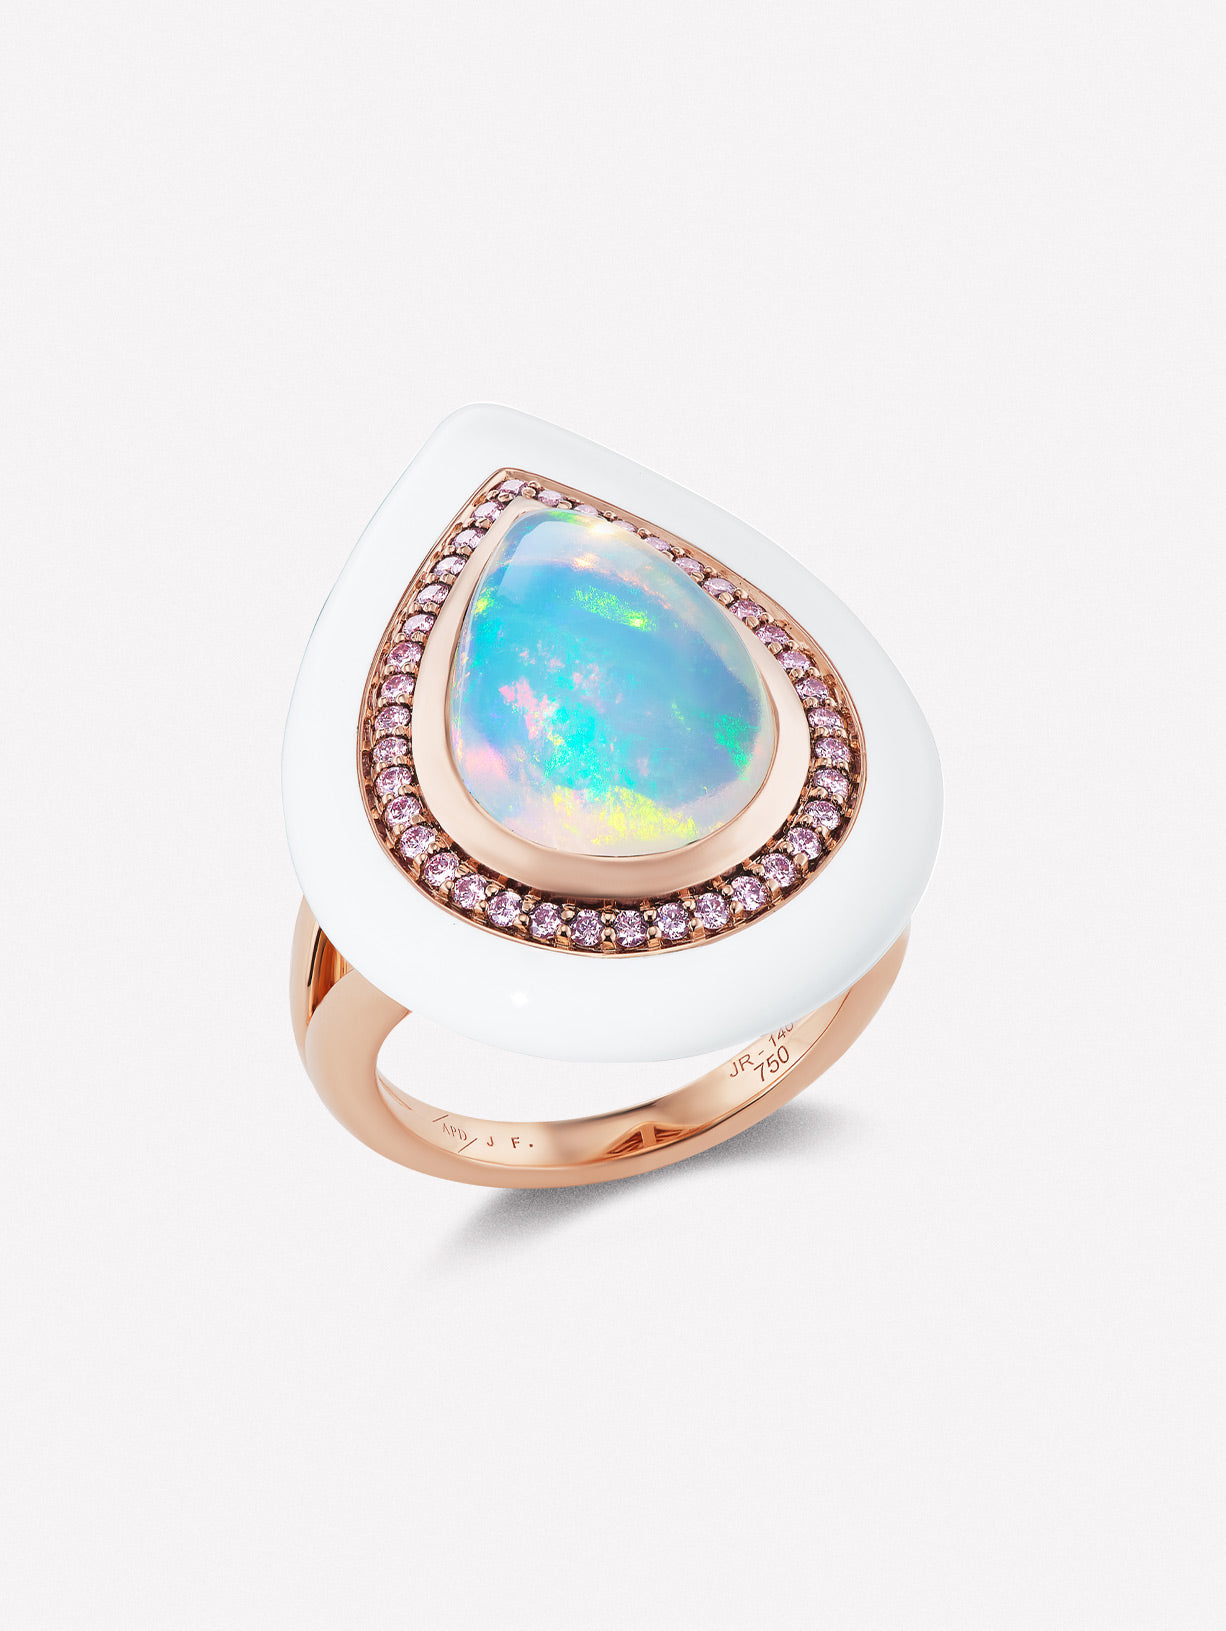 Argyle Pink™ Diamond and White Opal Enamel Ring - Pink Diamonds, J FINE - J Fine, ring - Pink Diamond Jewelry, argyle-pink™-diamond-and-white-opal-enamel-ring - Argyle Pink Diamonds